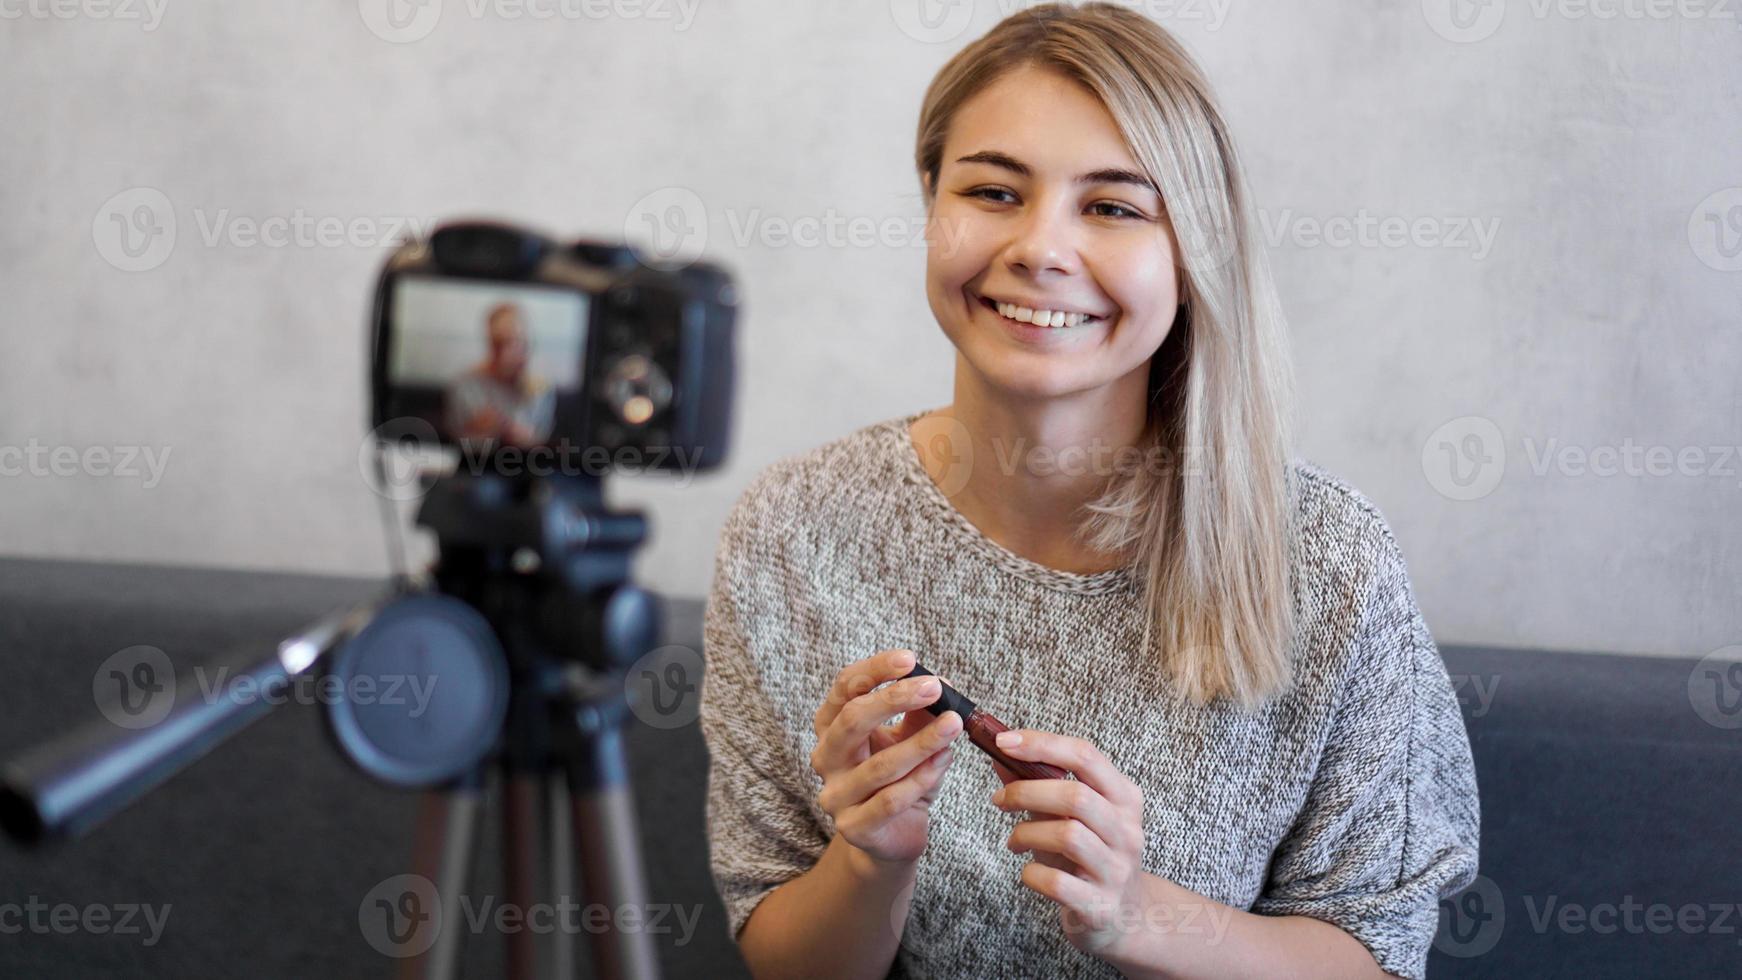 mujer vlogger mostrando lápiz labial. blogger de belleza en estudio casero foto